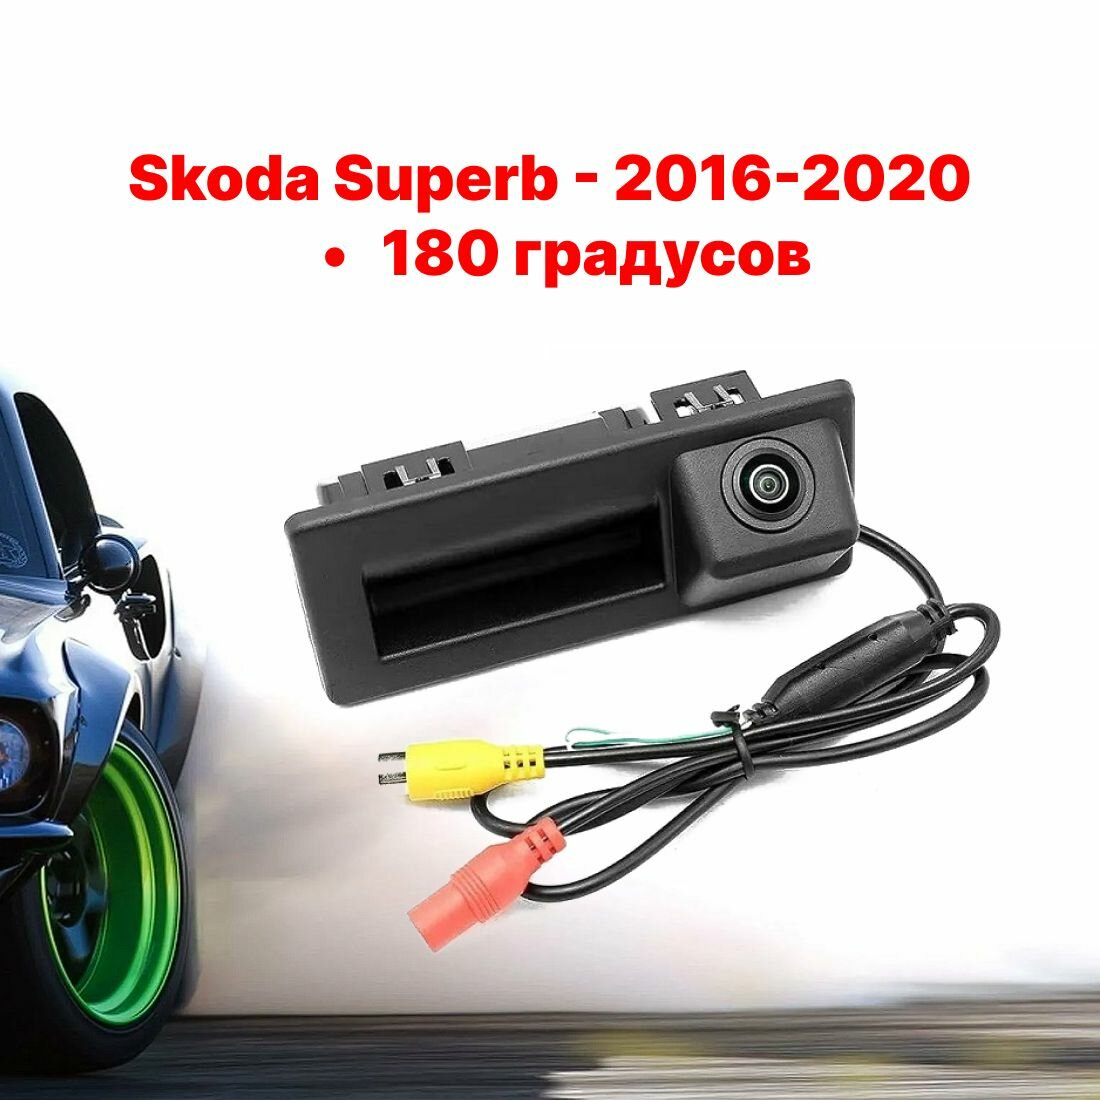 Камера заднего вида в ручку багажника Шкода Суперб - 180 градусов (Skoda Superb - 2016-2020)